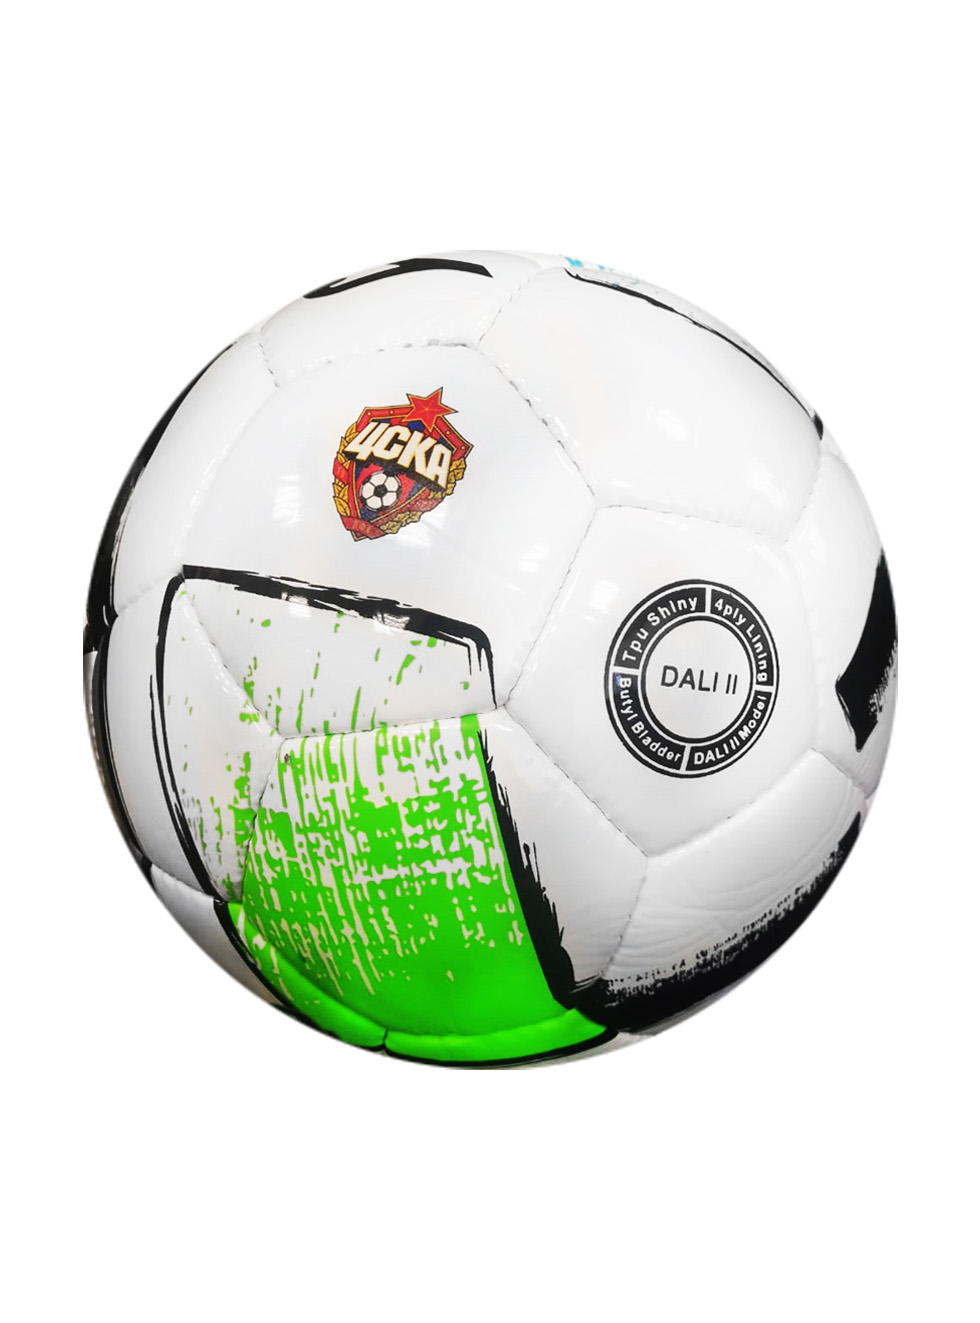 Мяч футбольный Joma DALI 2 с эмблемой ПФК ЦСКА, размер 5